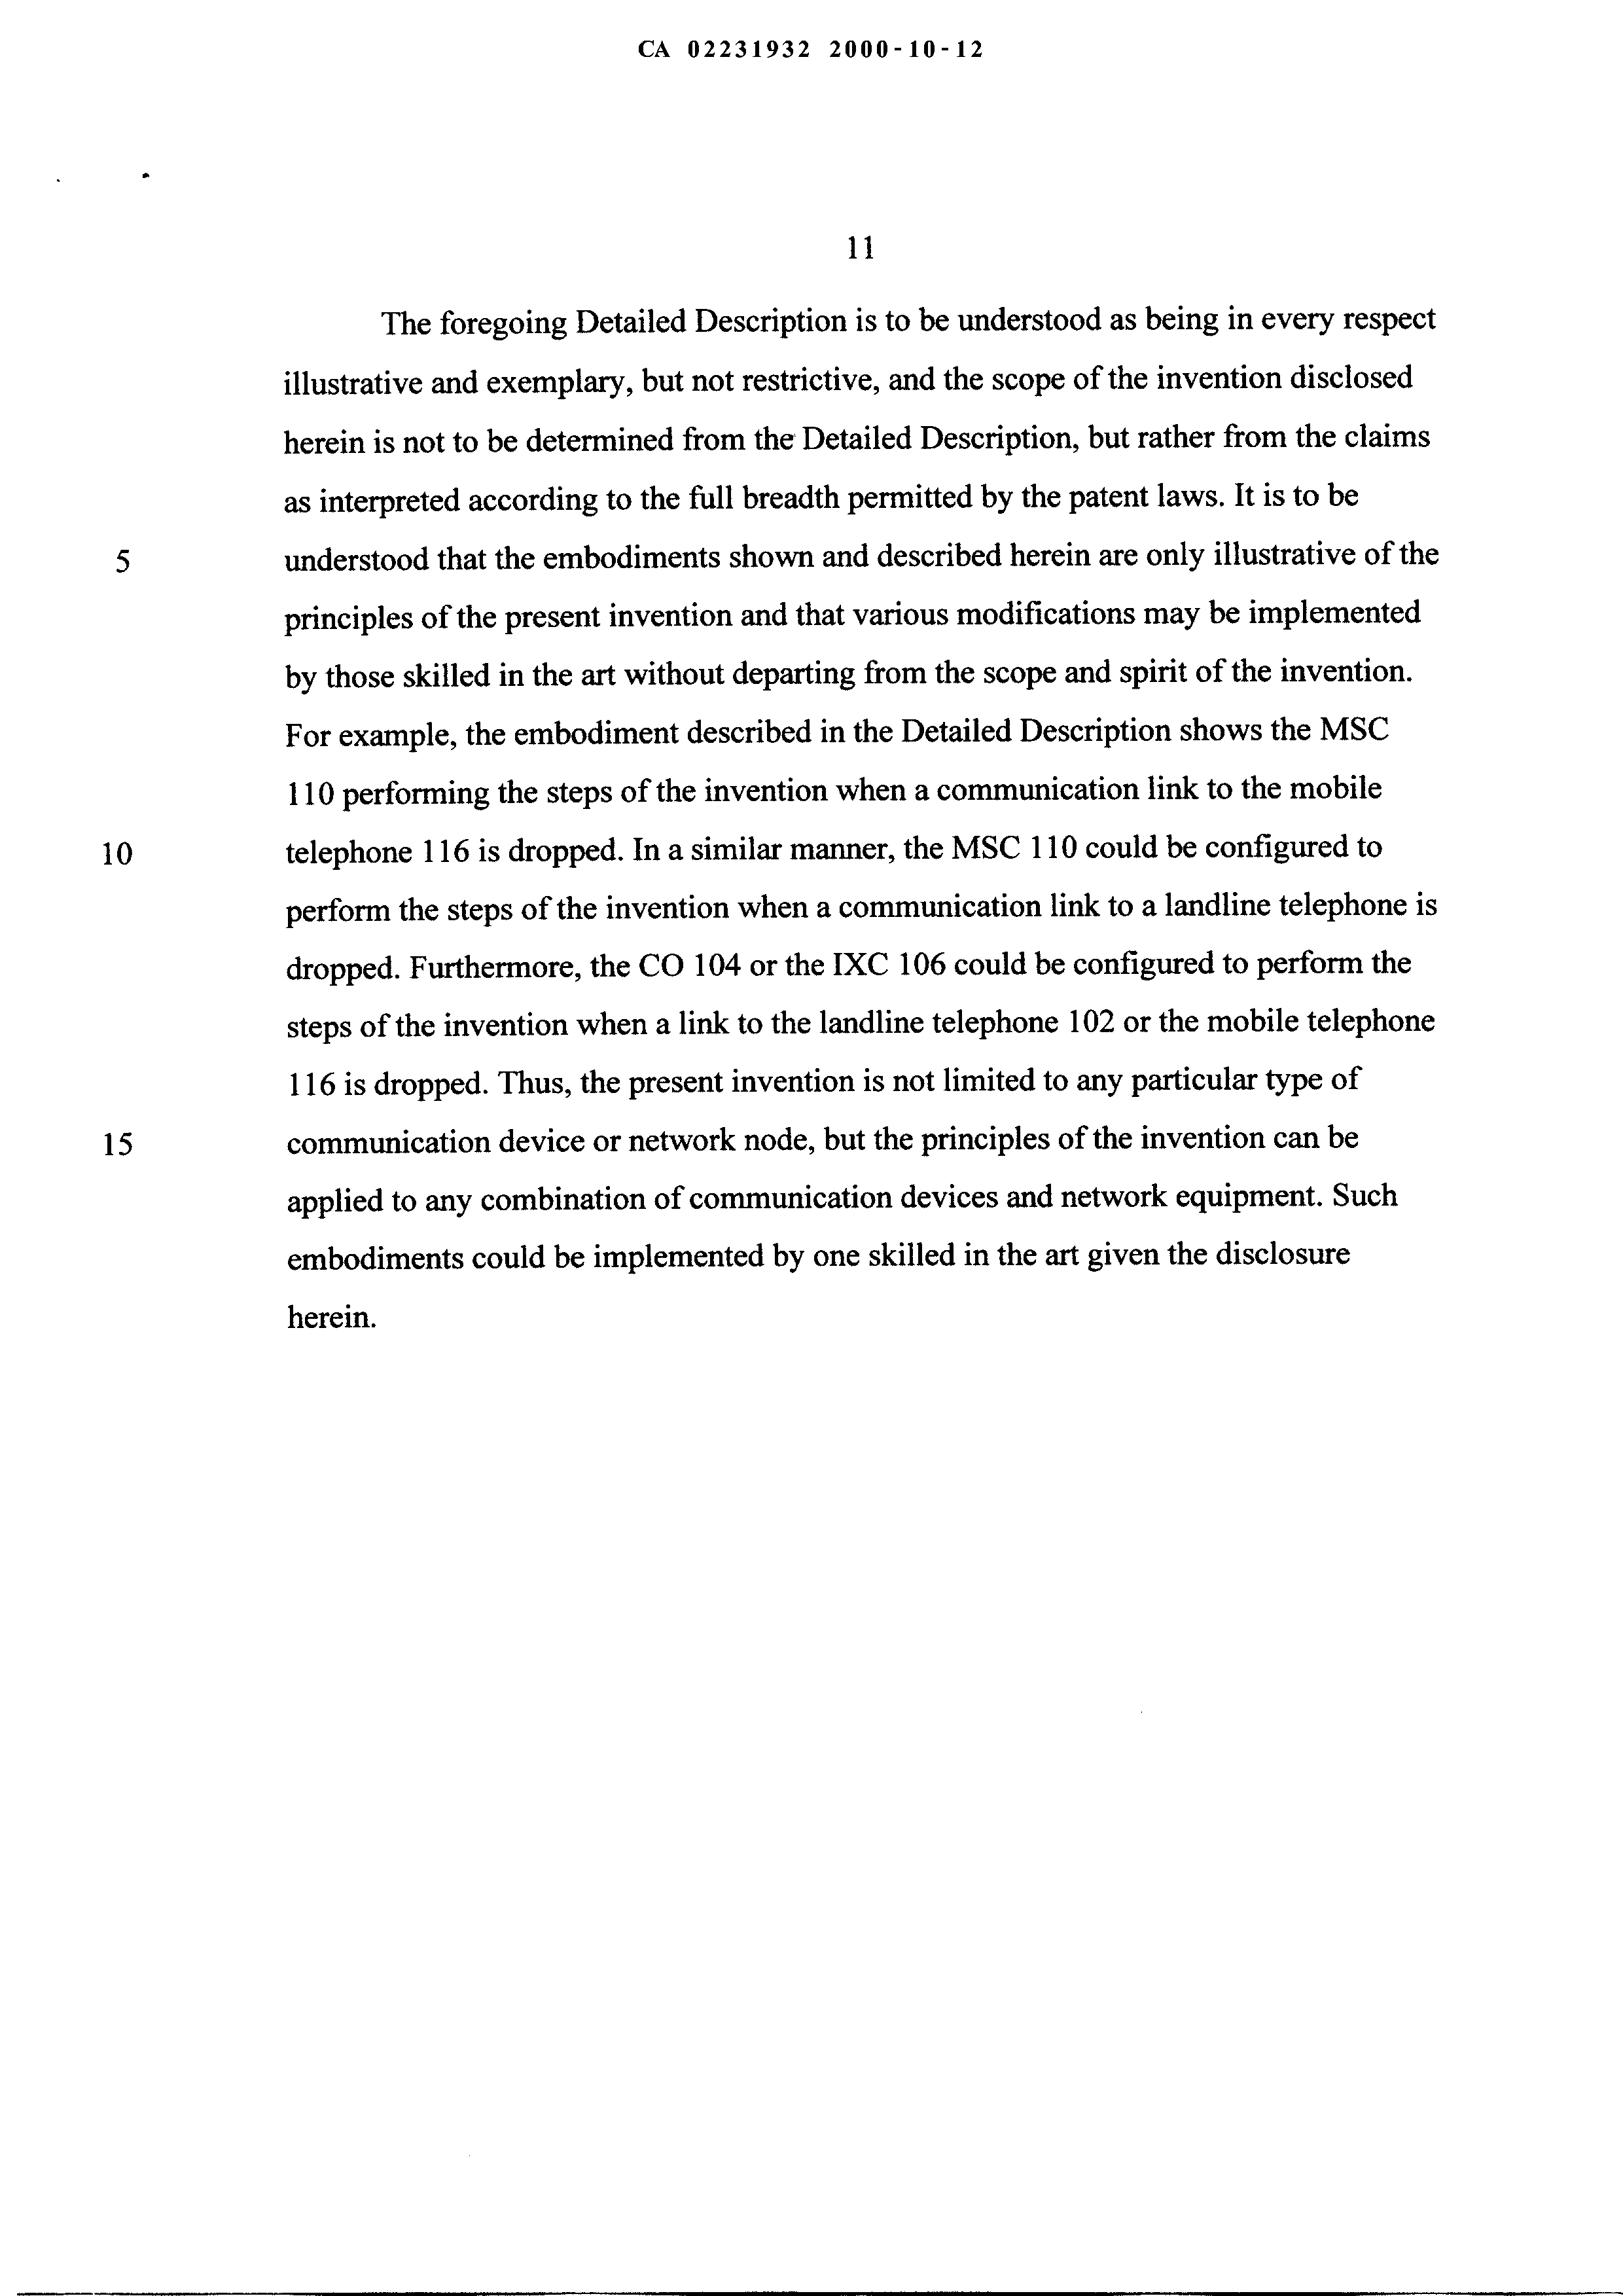 Canadian Patent Document 2231932. Description 19991212. Image 11 of 11